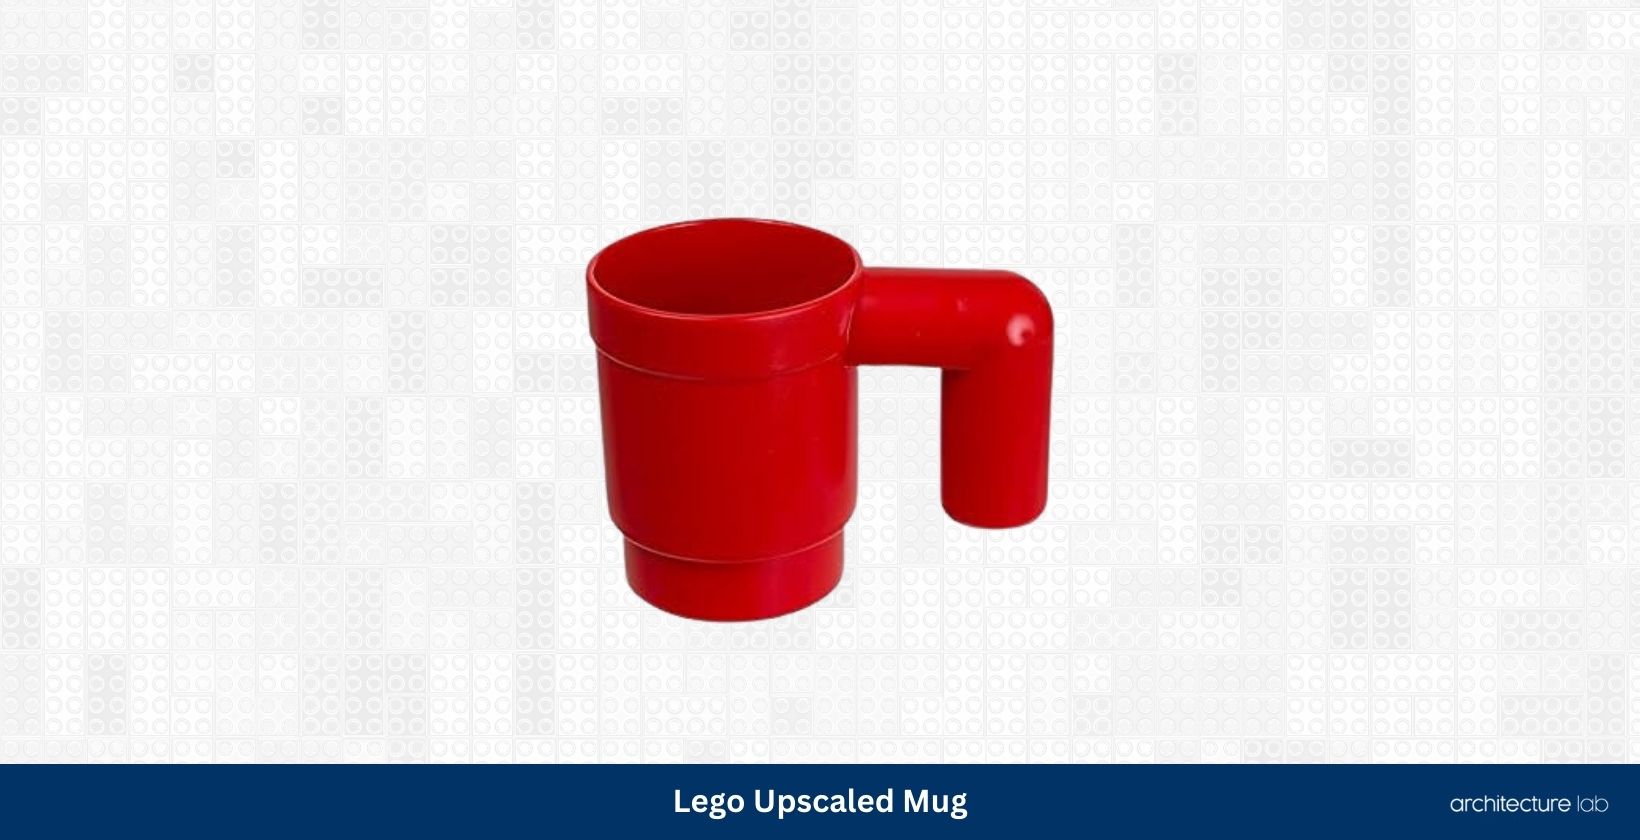 Lego upscaled mug